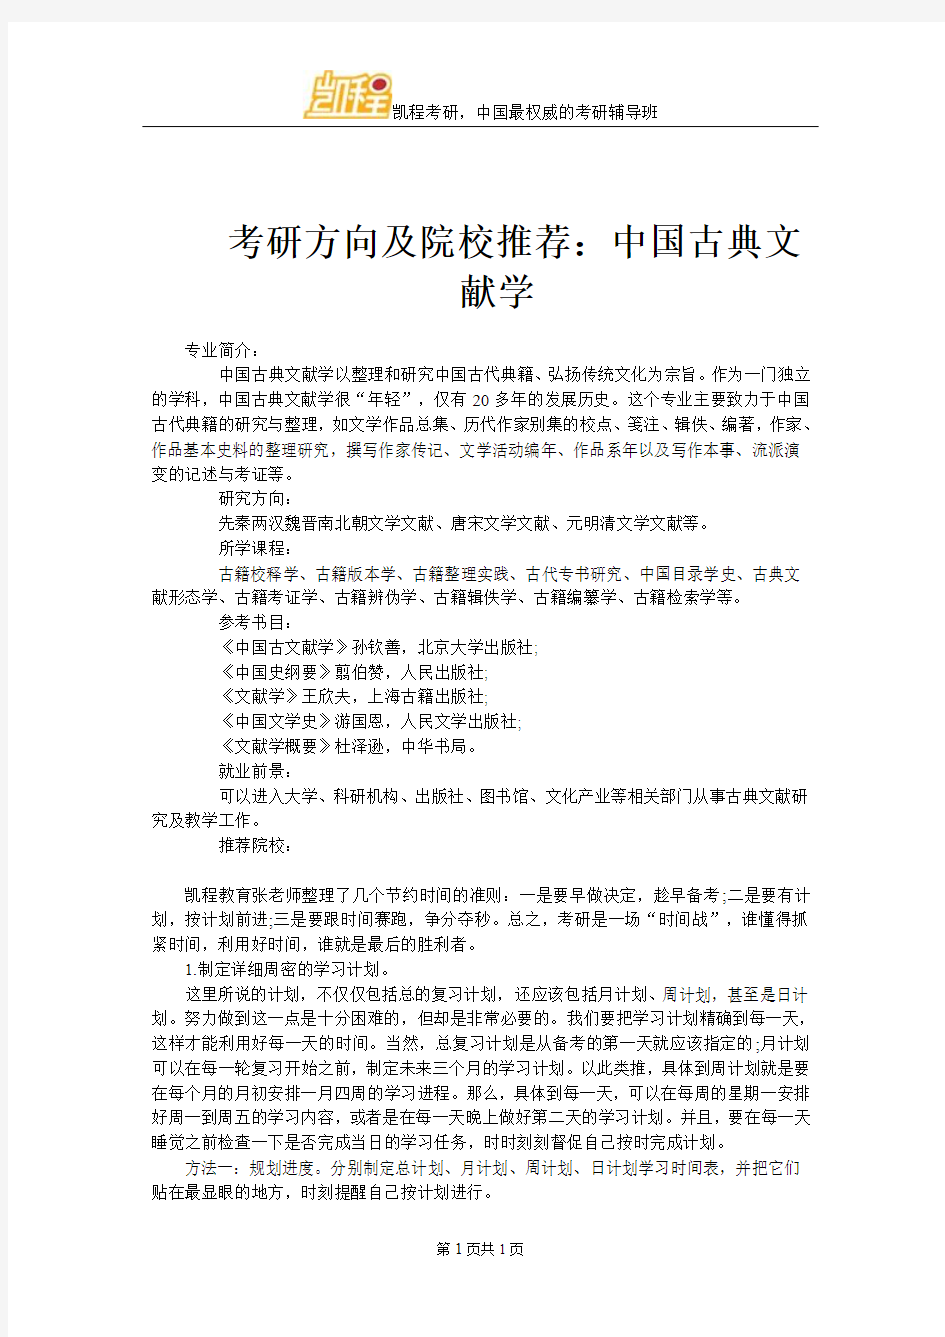 考研方向及院校推荐：中国古典文献学